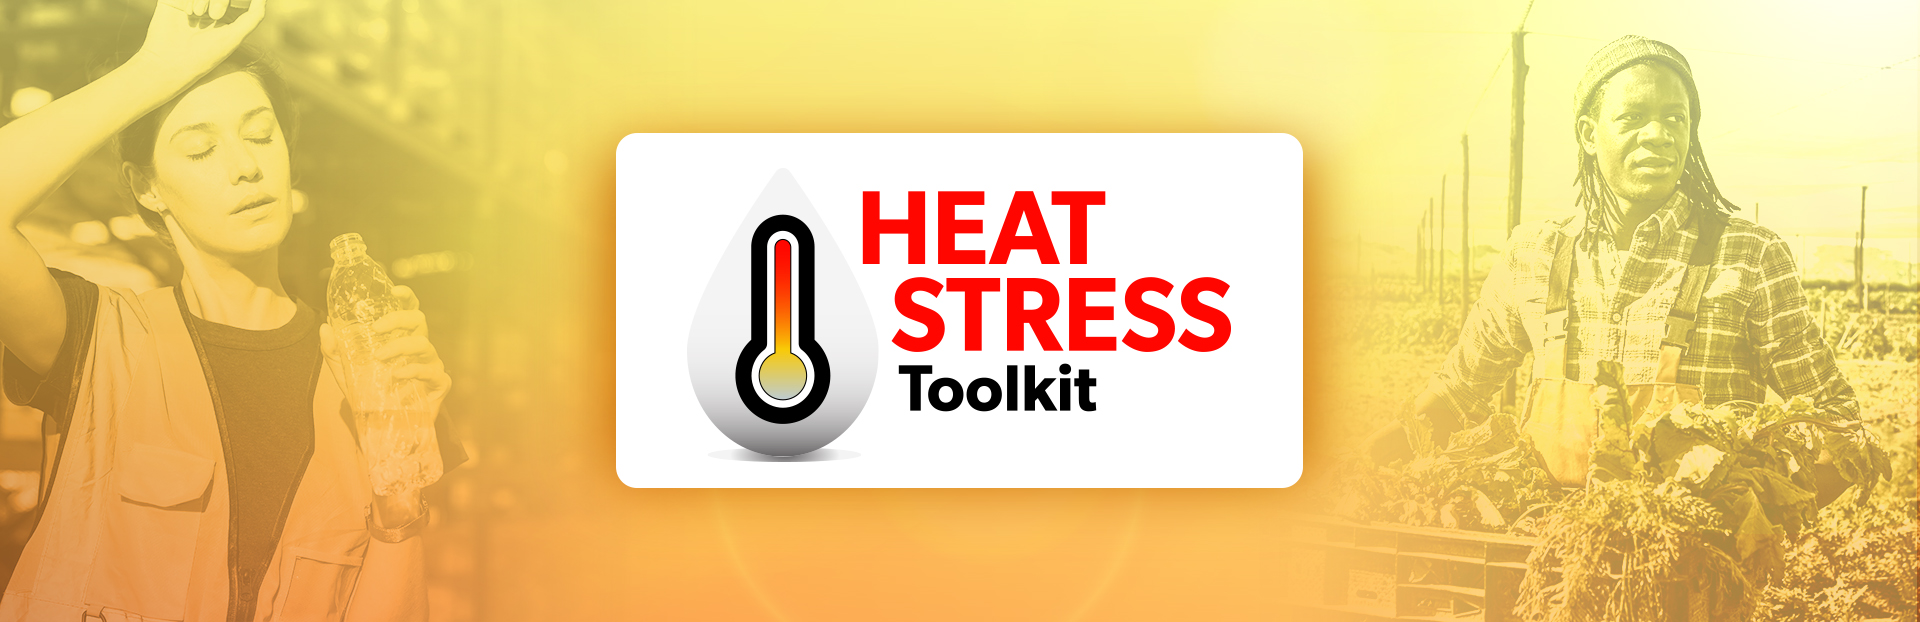 Heat Stress Toolkit | Une nouvelle trousse pour aider à prévenir le stress thermique au travail